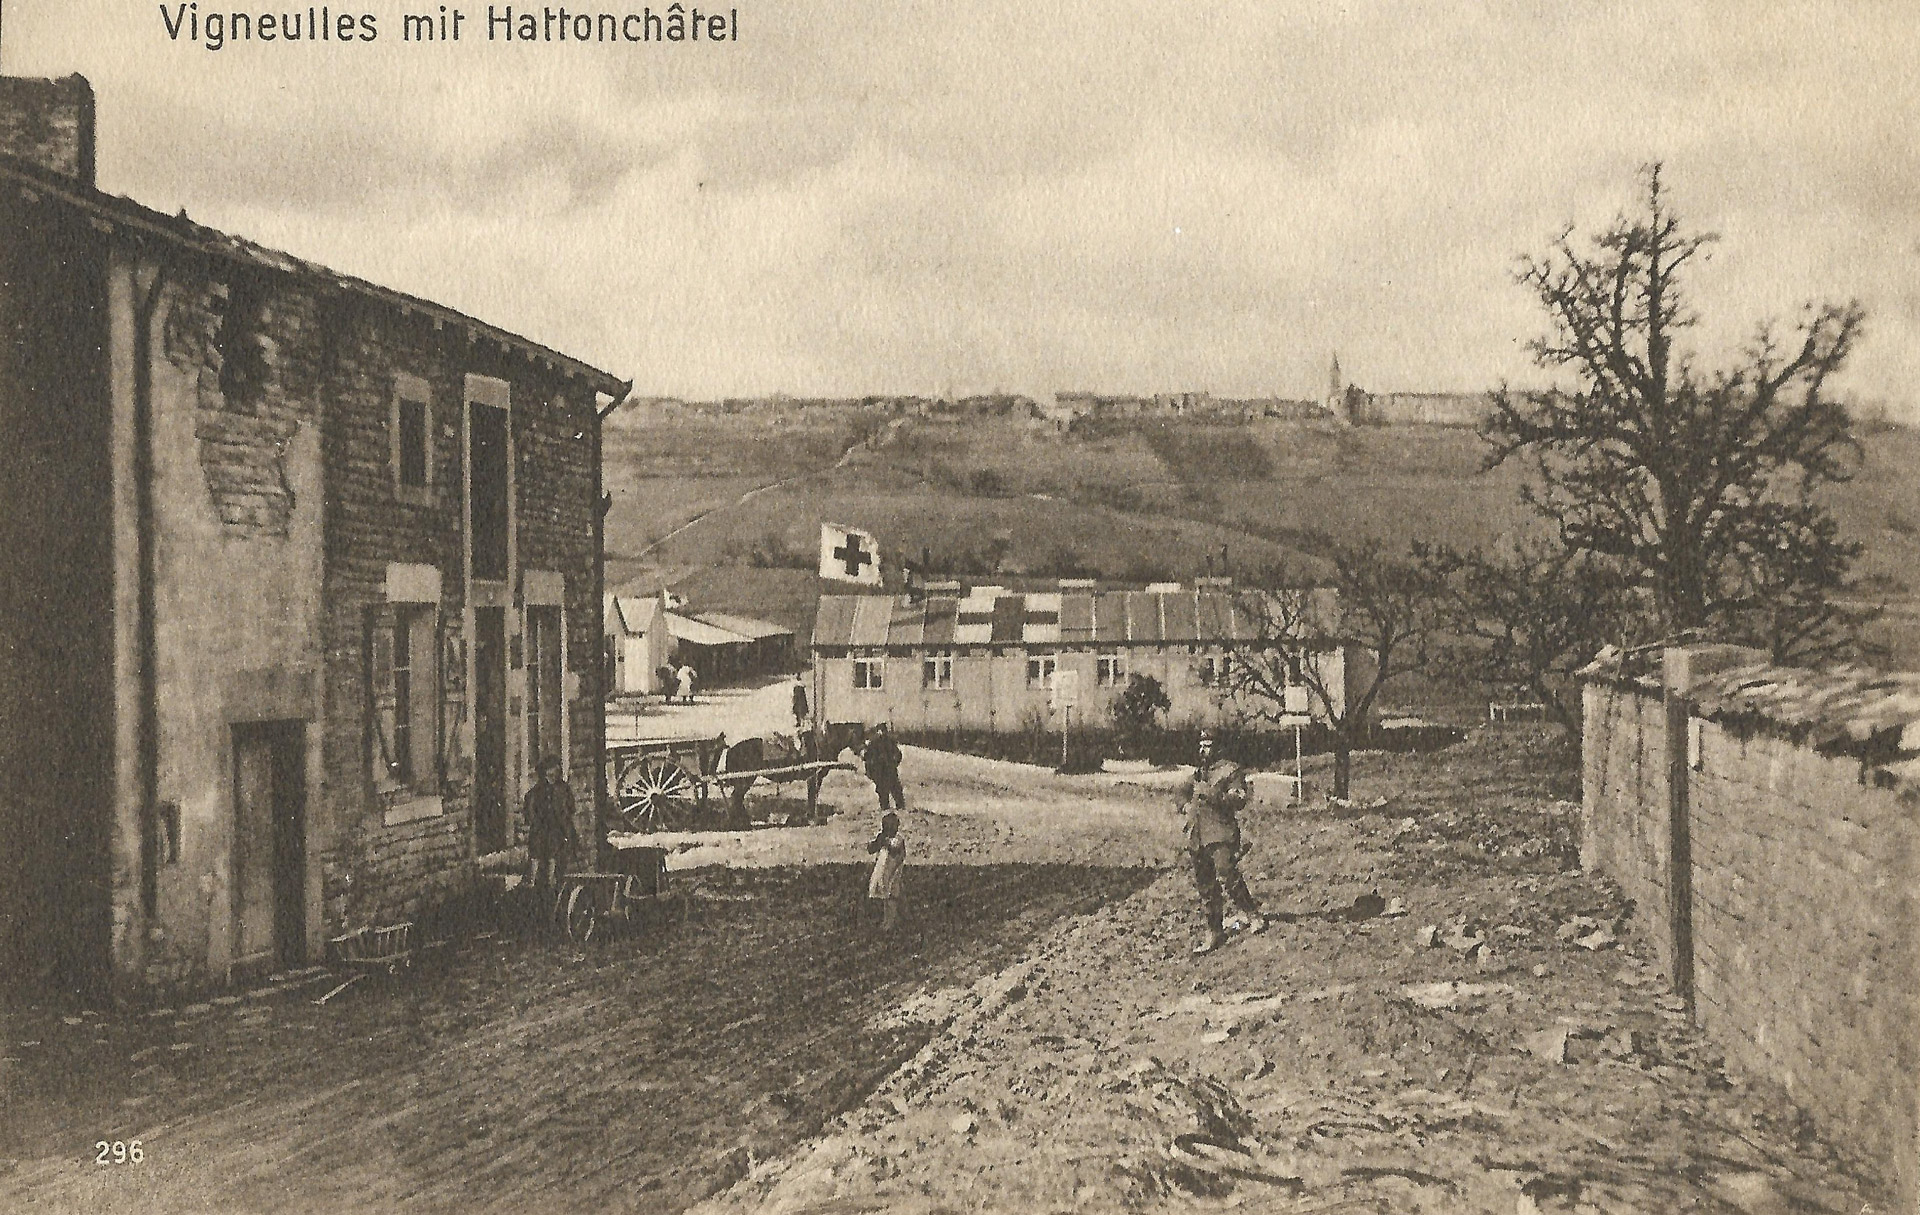 Vigneulles : vue sur le dispensaire militaire et sur Hattonchâtel, au fond │ Carte postale allemande non circulée │ col. pdgit1918